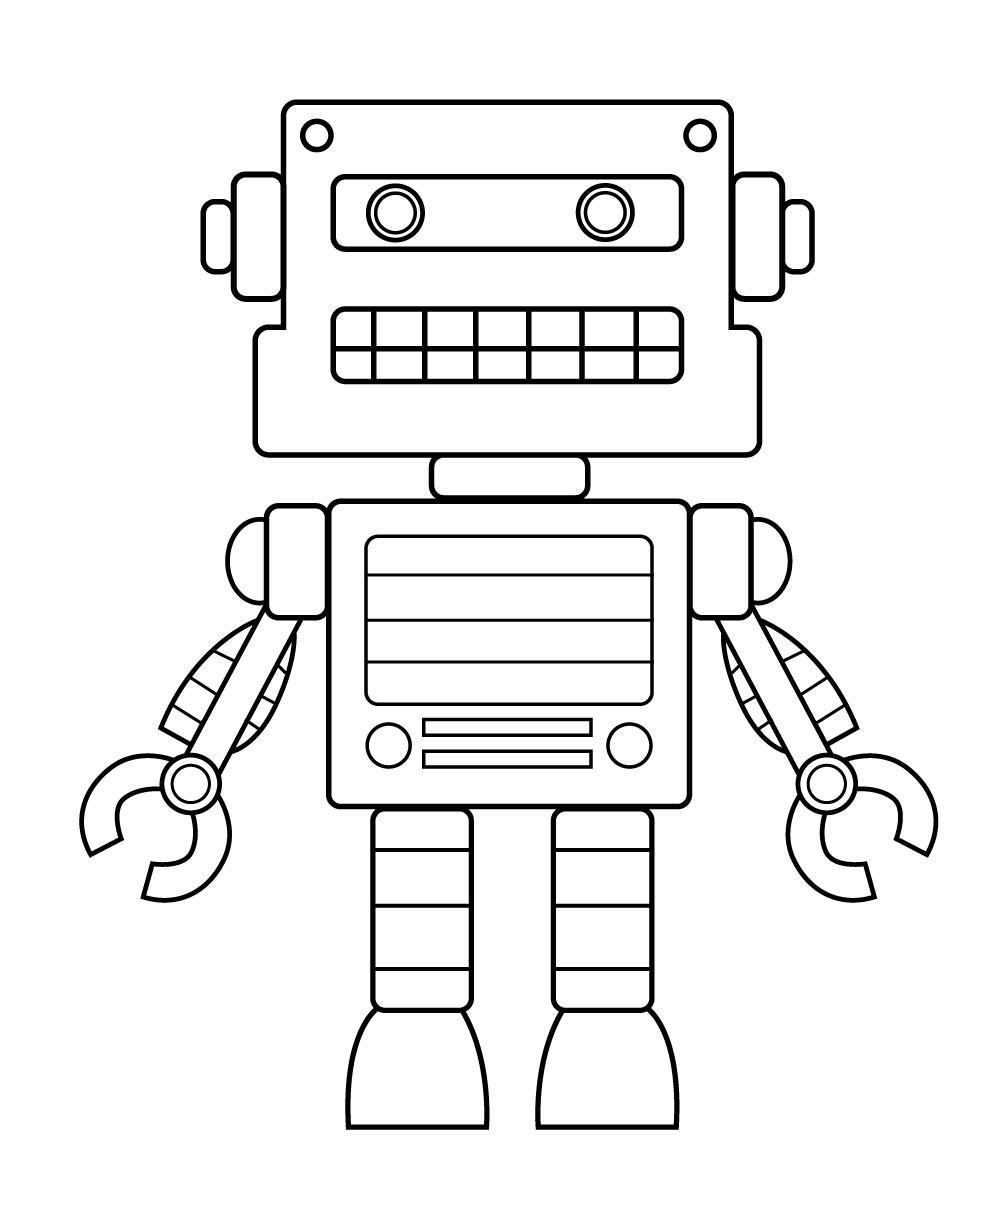 Cách vẽ robot đẹp cho bé [Nhiều mẫu hình vẽ robot đơn giản dễ thực ...